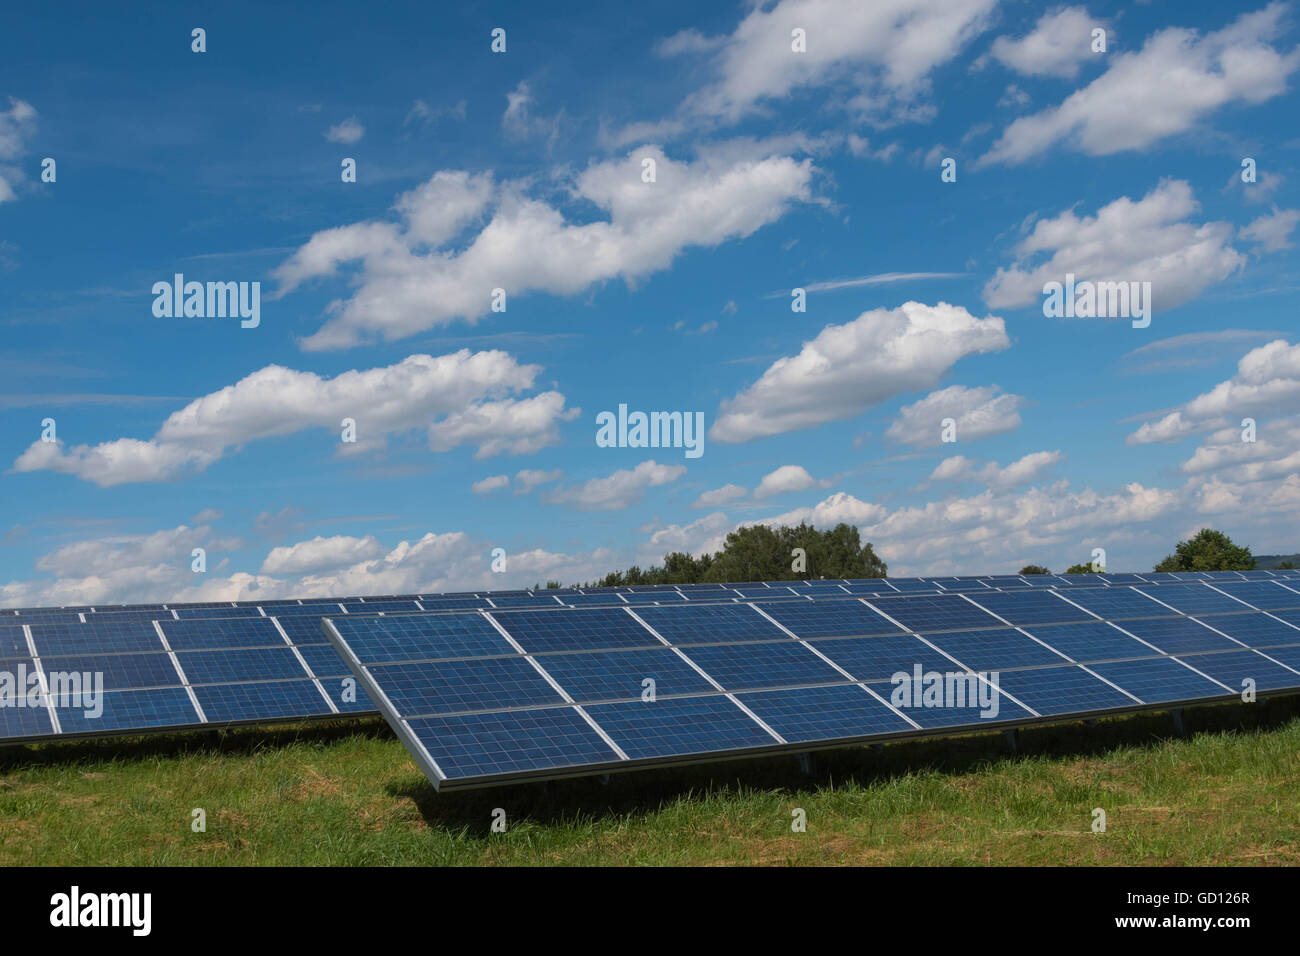 Installation solaire - panneaux photovoltaïque - energie renouvelable Banque D'Images